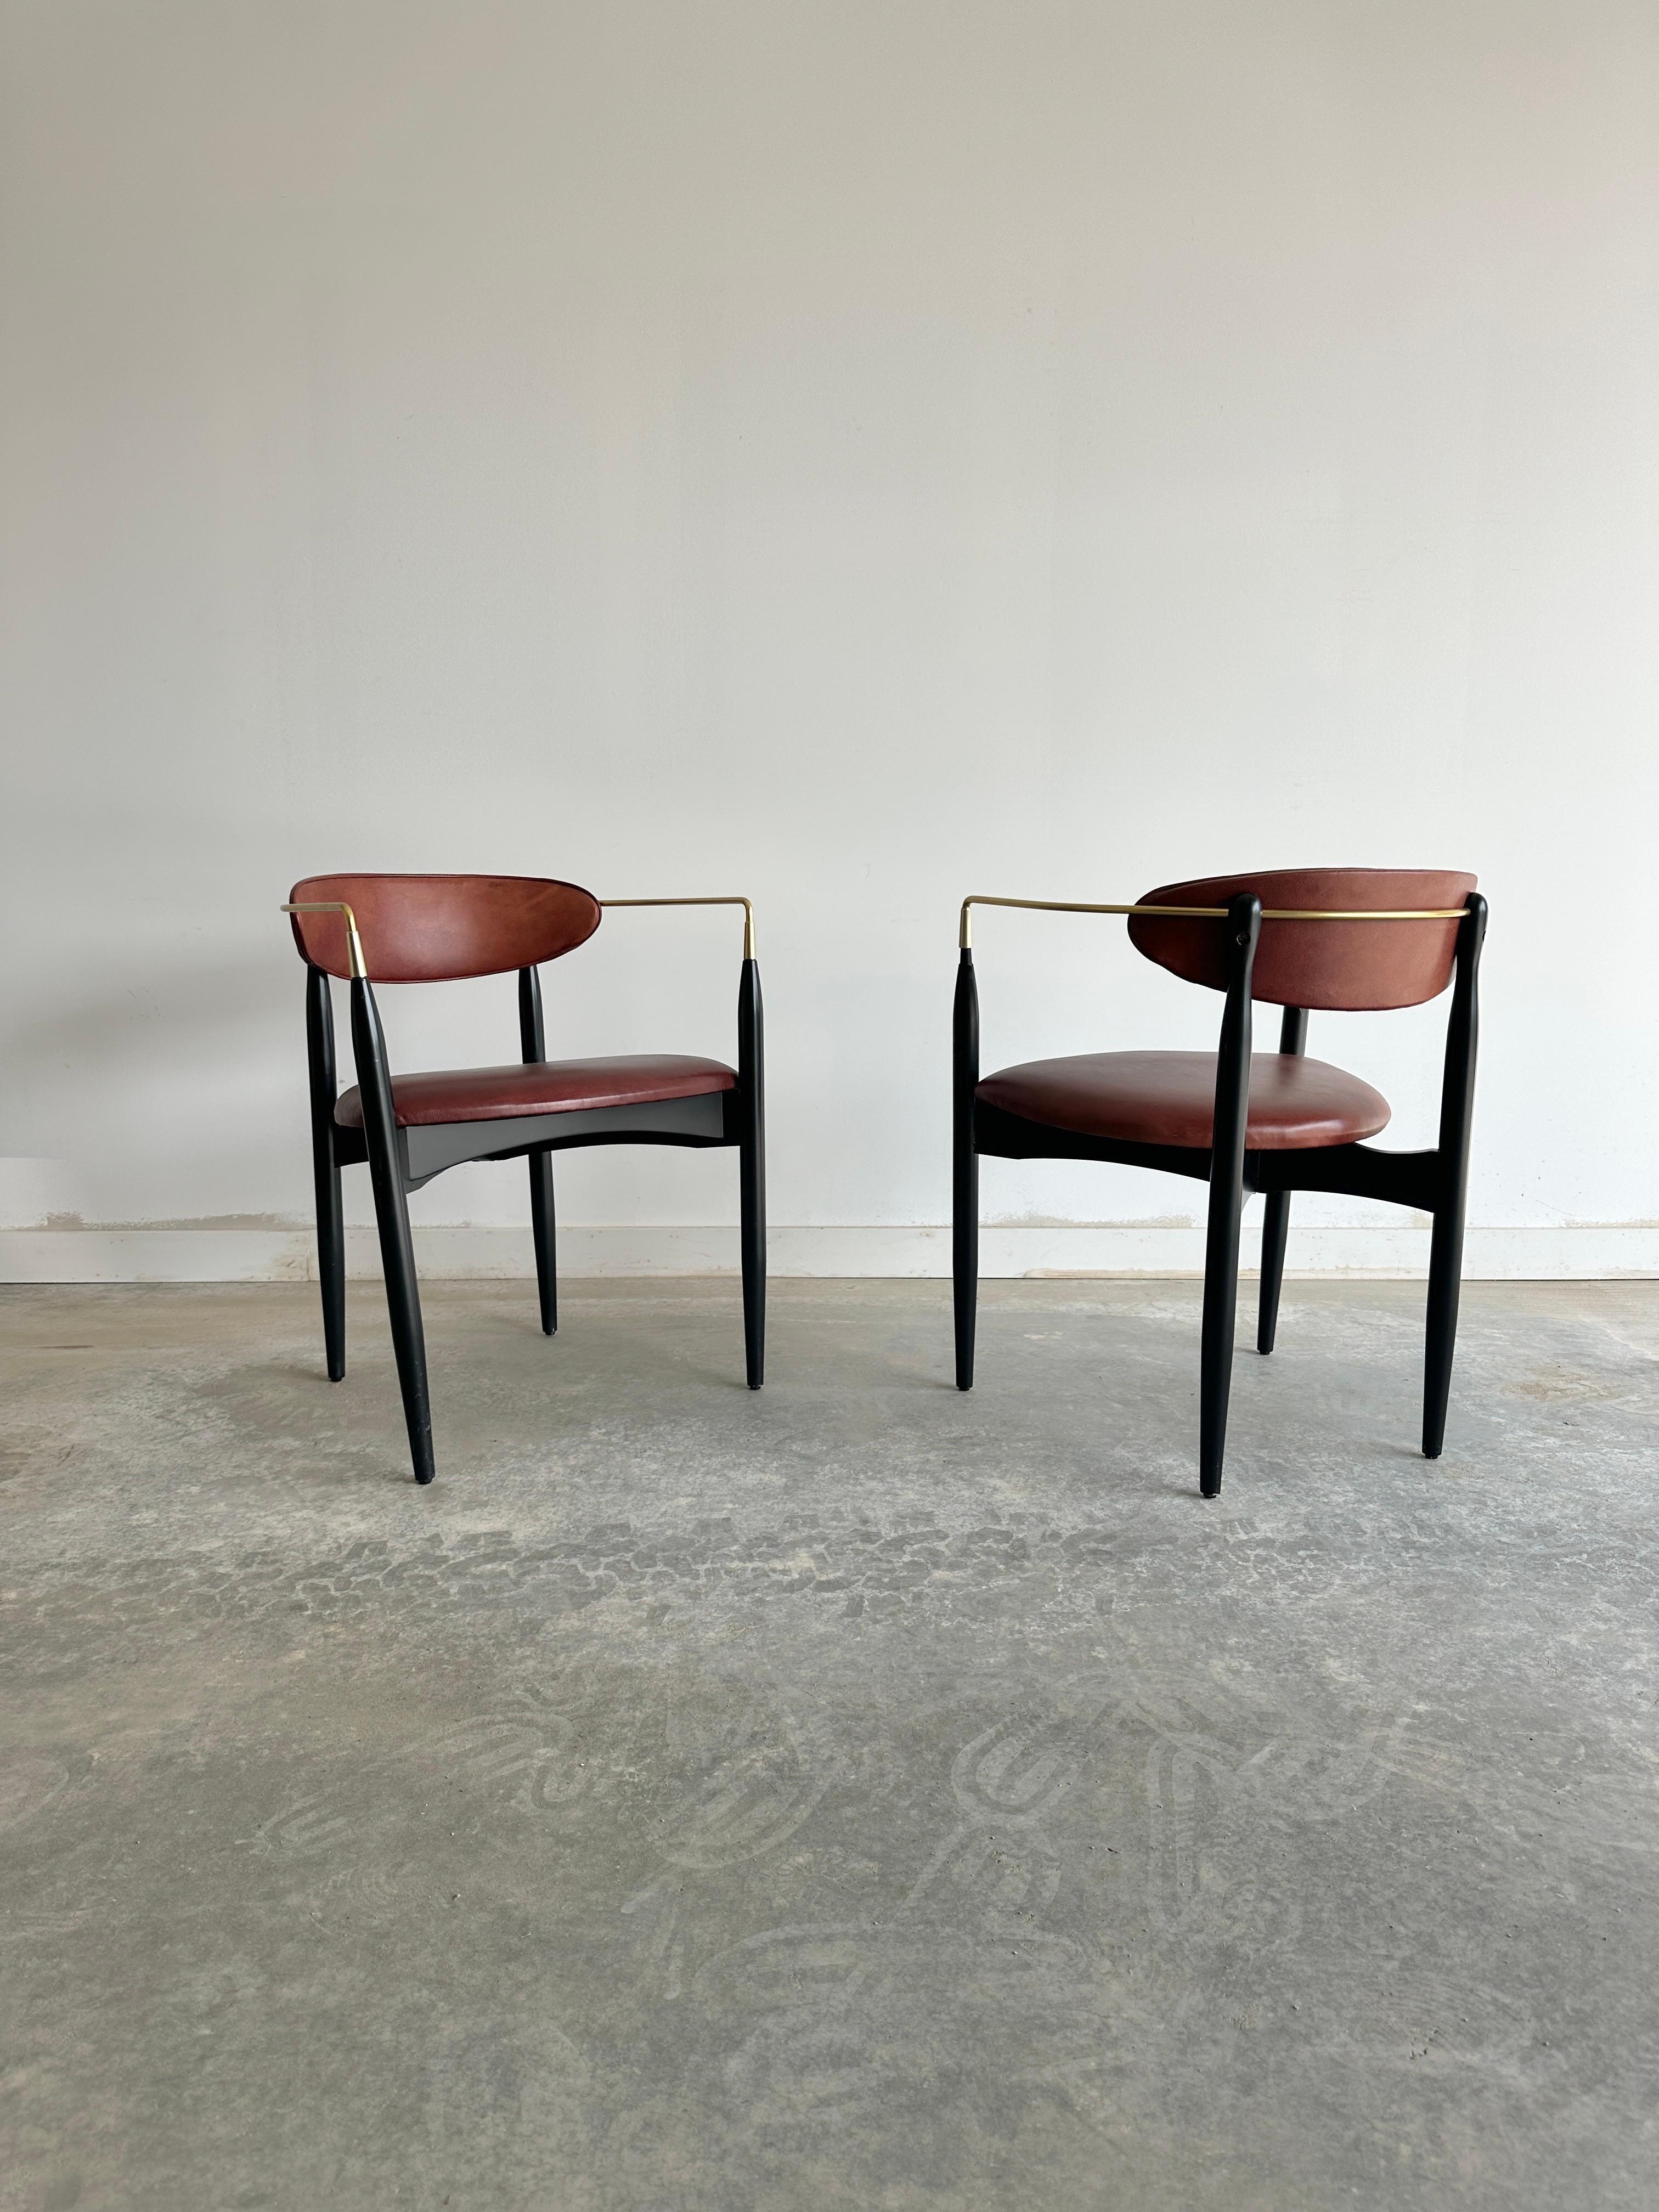 Ce superbe fauteuil est un exemple rare du design Viscount de Dan Johnson pour Selig. Il est doté d'un élégant cadre en laiton et d'un riche revêtement en cuir cognac. La chaise présente un style moderne du milieu du siècle, avec un dossier incurvé,